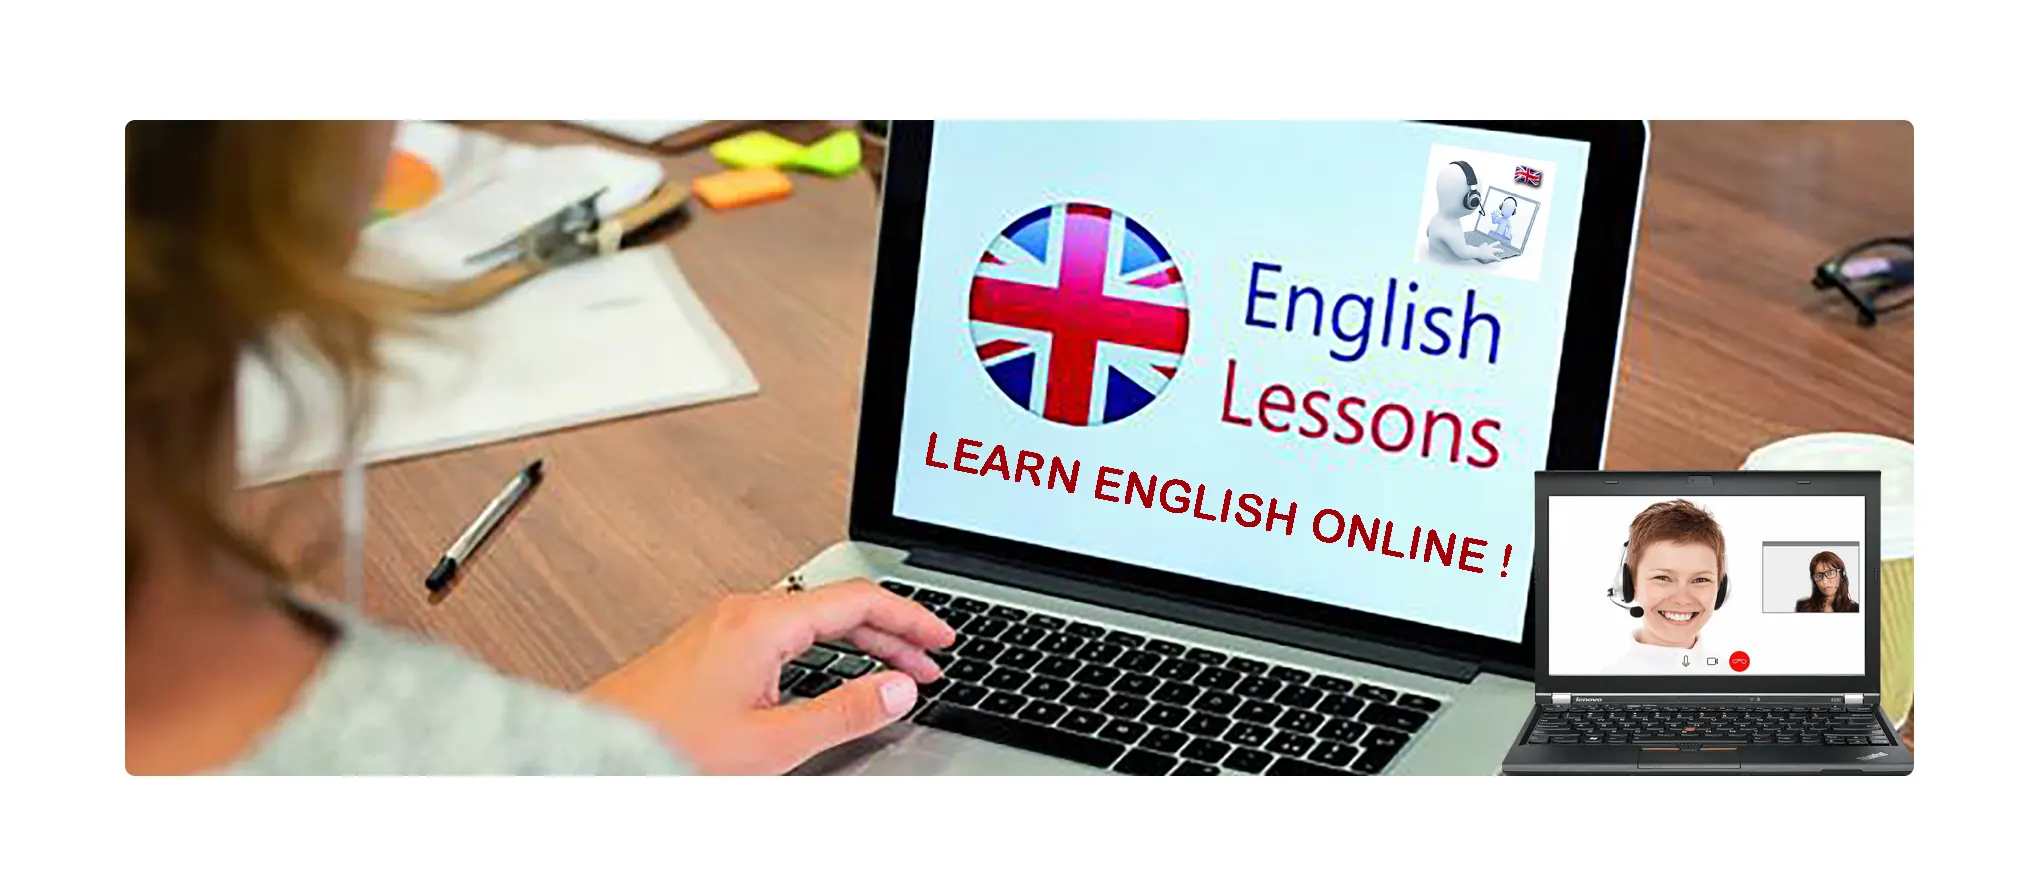 it'sEasy - Learn English Online